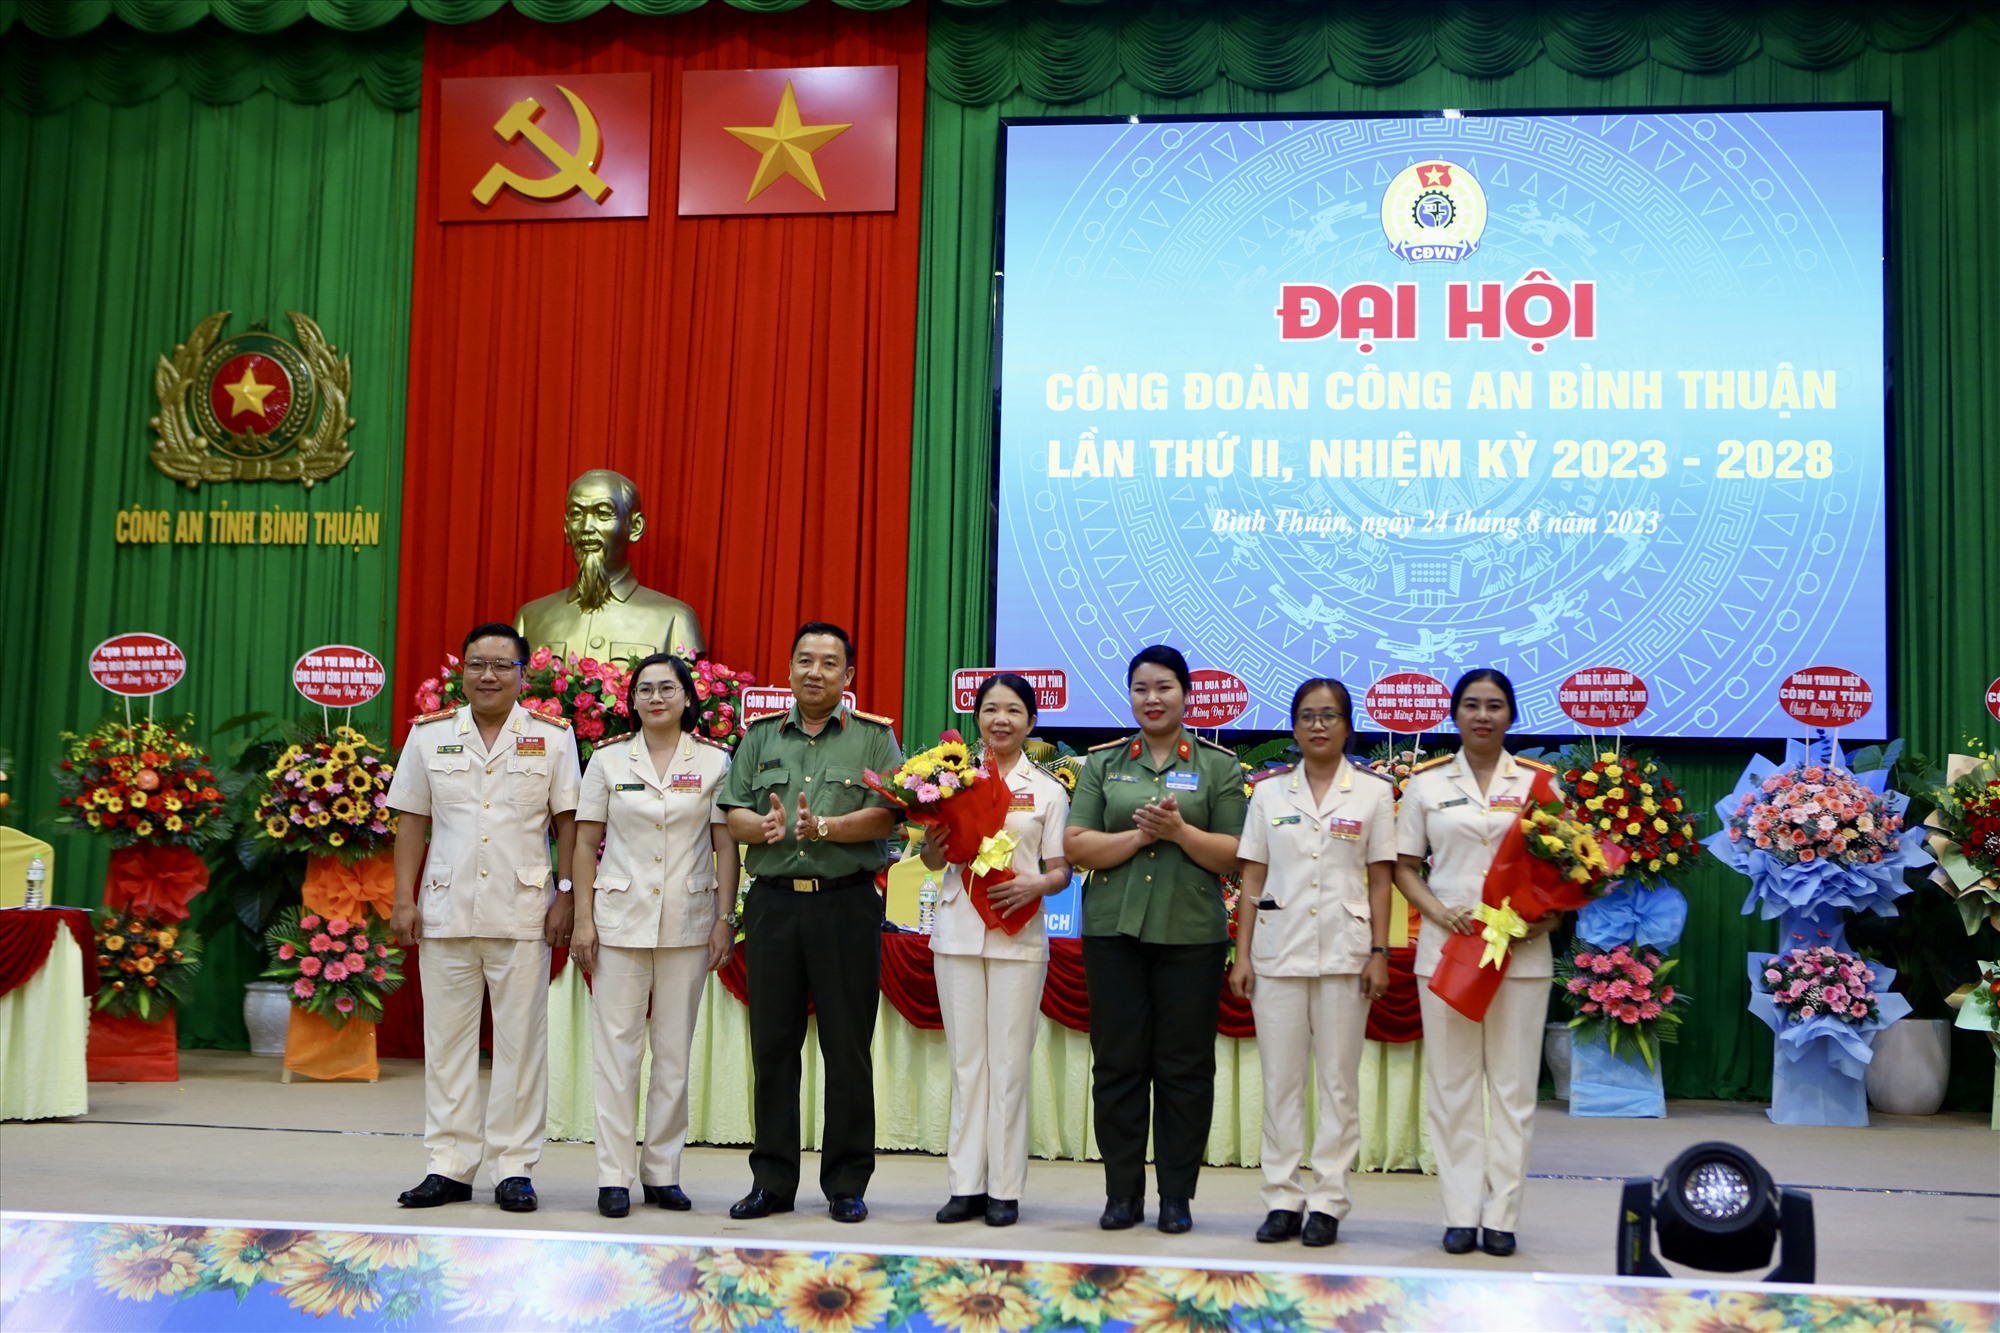 Công đoàn CAND và Đảng uỷ, lãnh đạo công an tỉnh Bình Thuận chúc mừng đoàn đại biểu đi dự đại hội cấp trên. Ảnh: Duy Tuấn